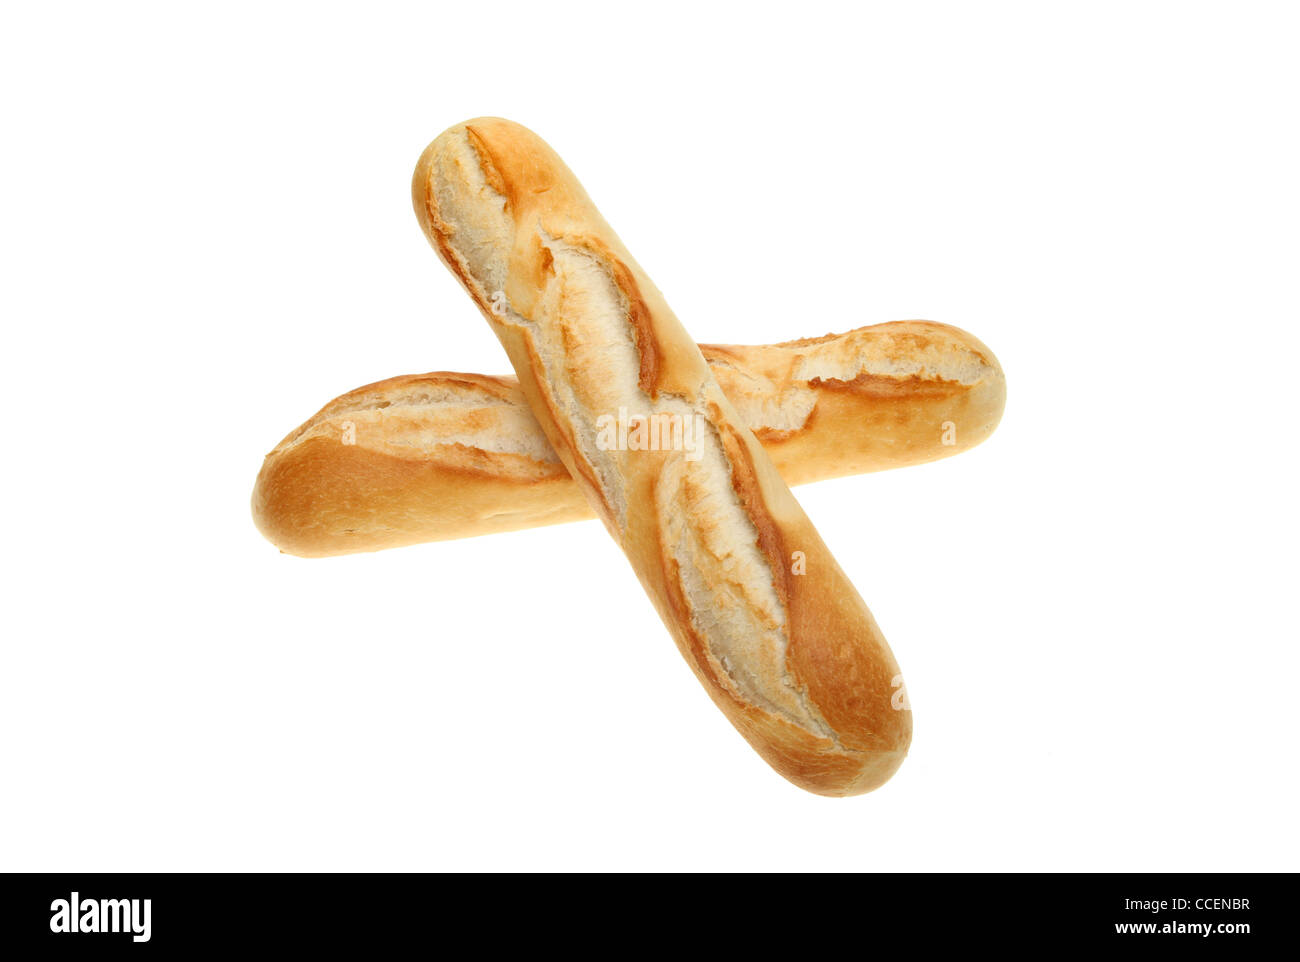 Dos rollos de pan de baguette aislado contra un blanco Foto de stock